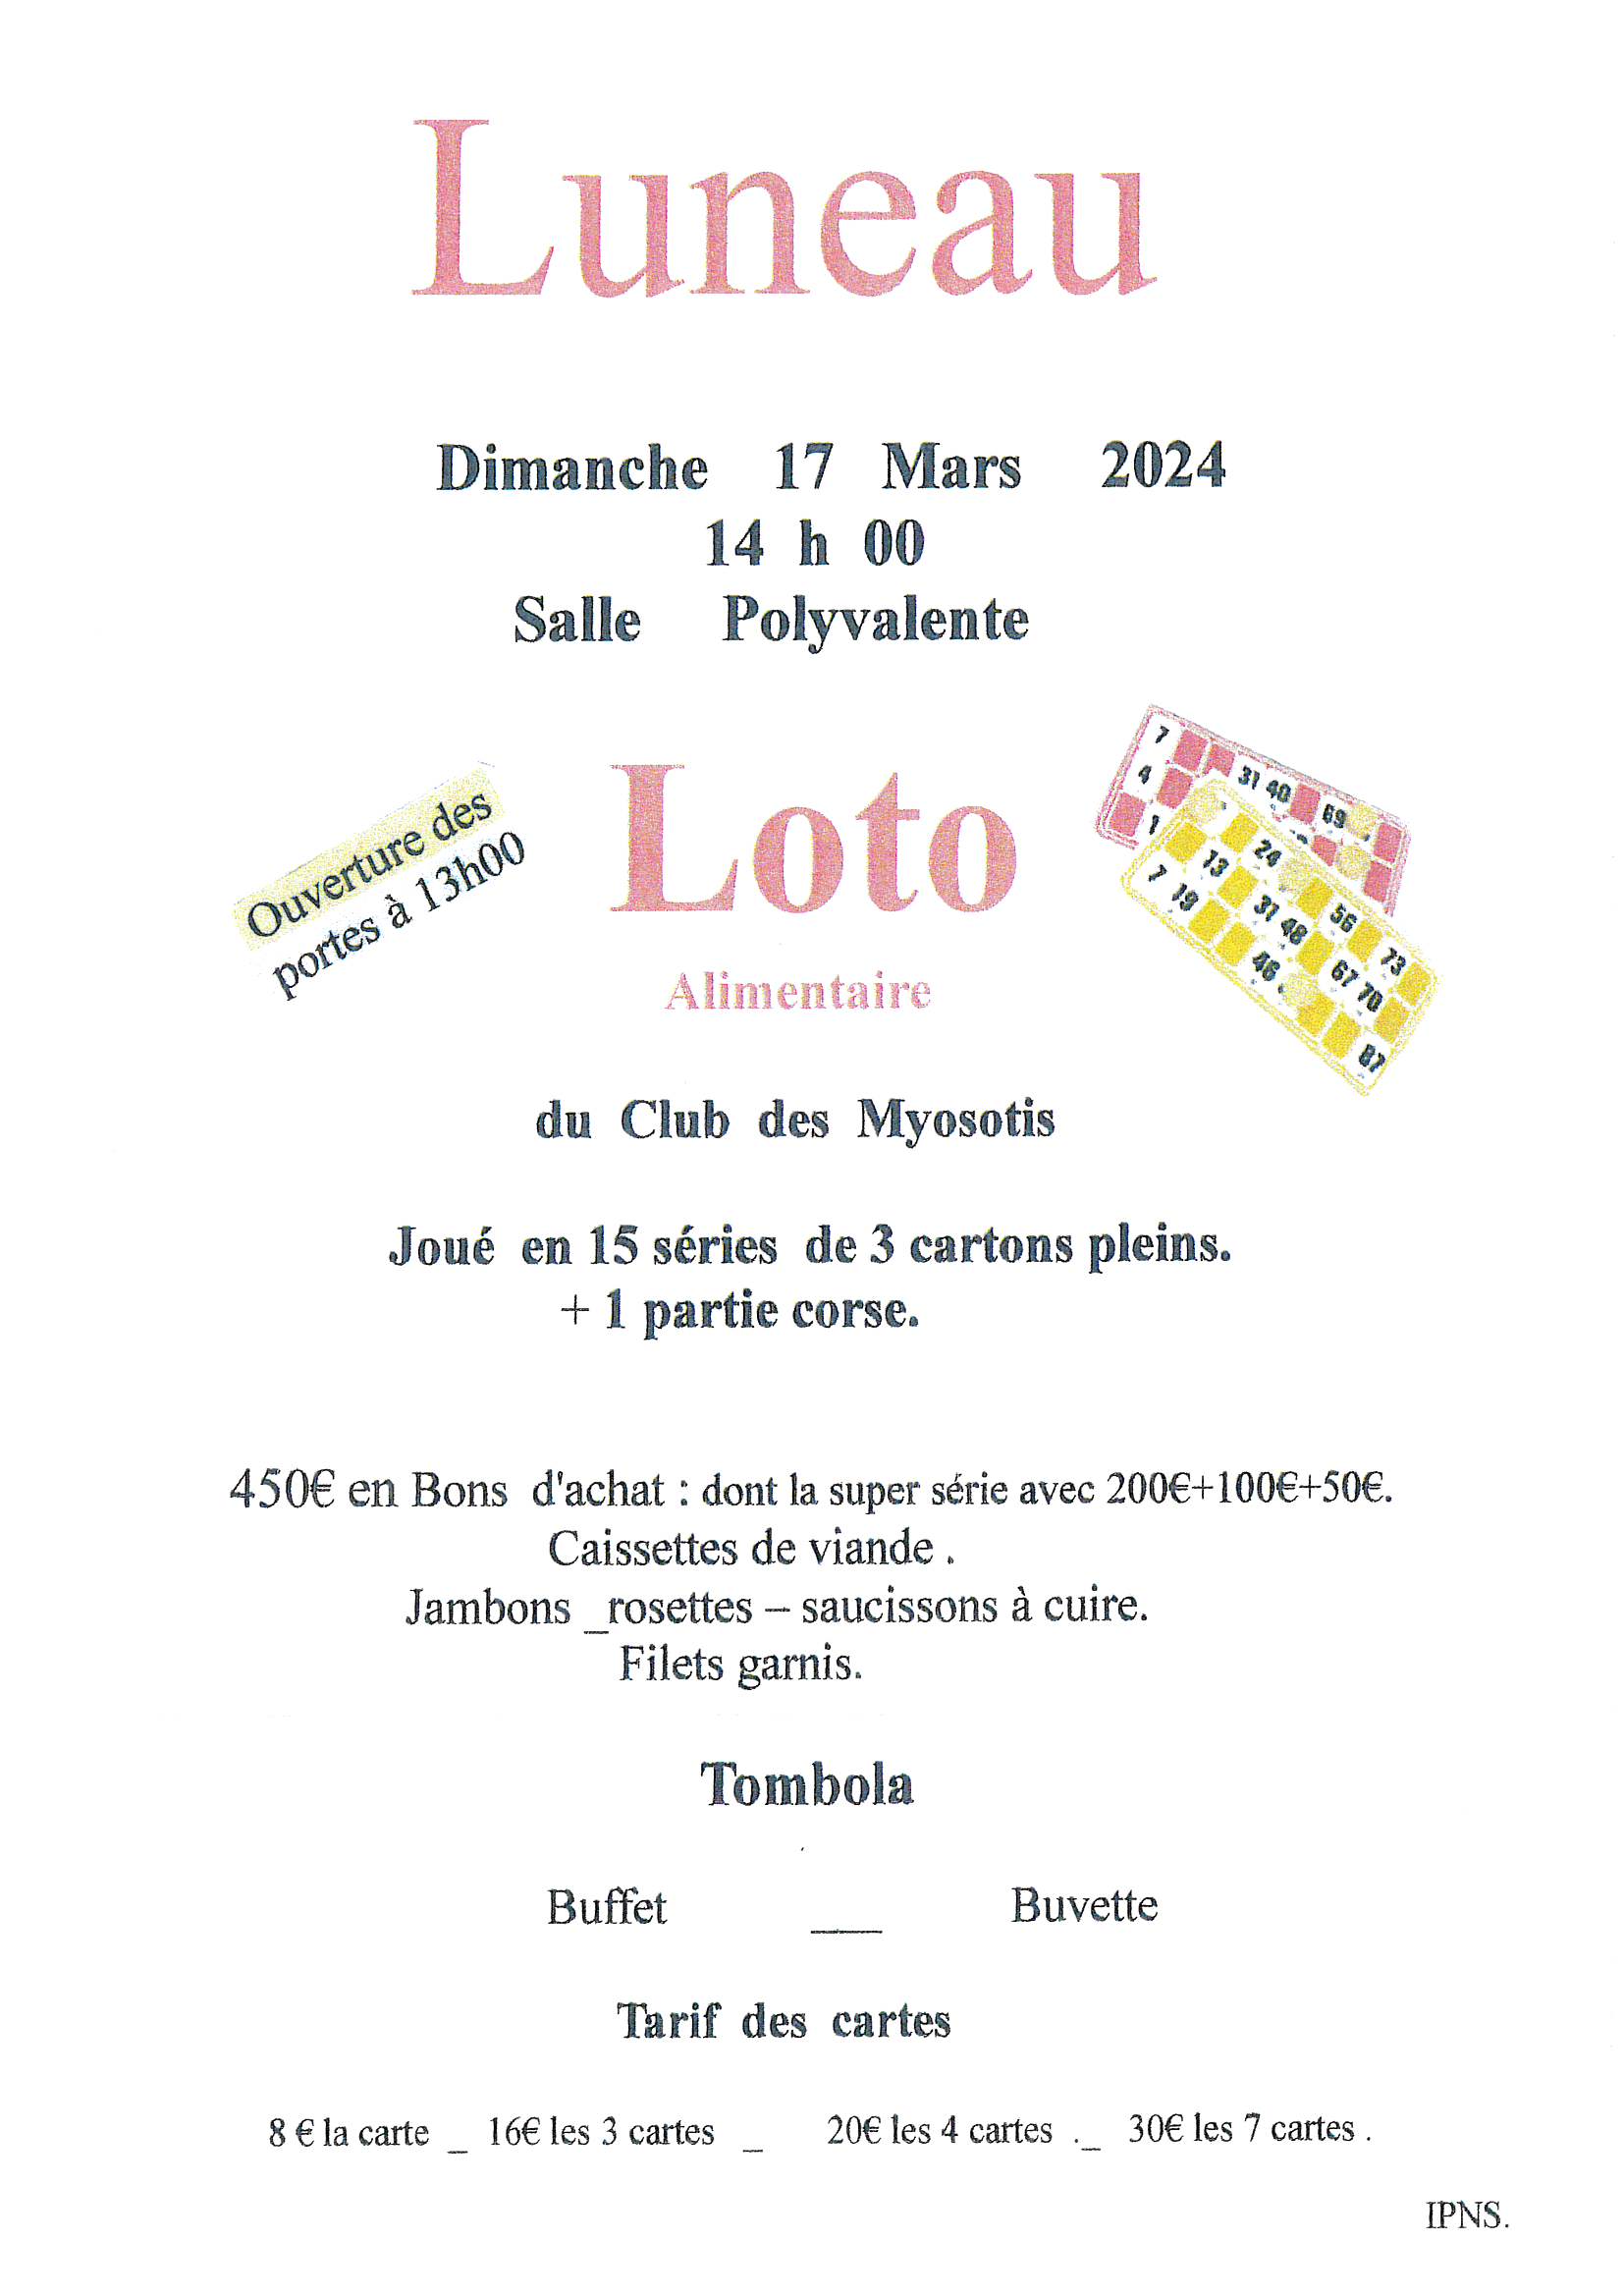 Le club des Myosotis organise un loto alimentaire dimanche 17 mars 2024 à la salle polyvalente